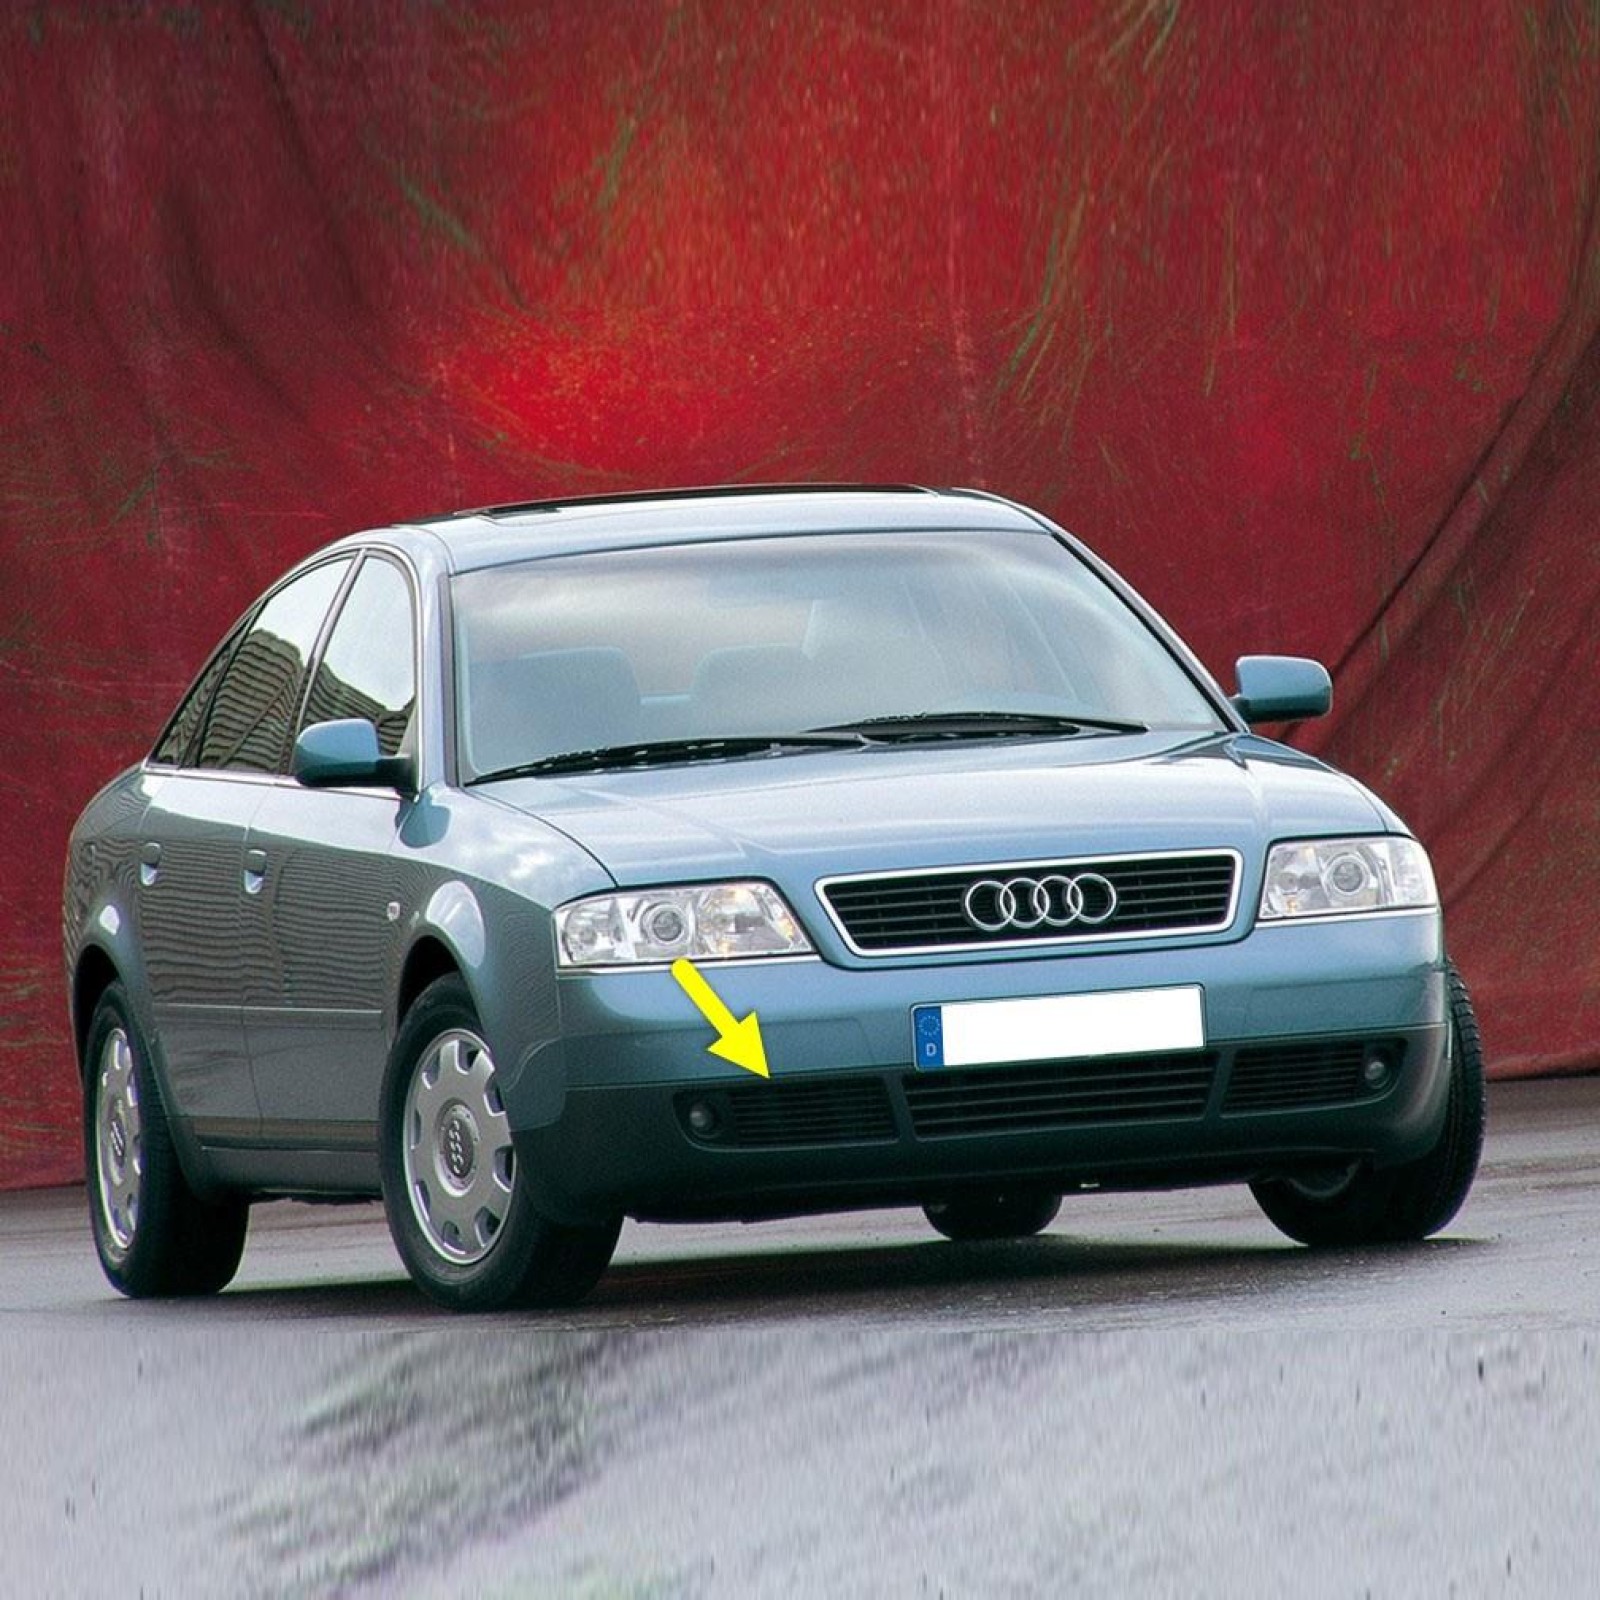 06 1997. Audi a6 [c5] 1997-2004. Audi a6 1997. Audi a6 c5 1997. Audi a6 c5.